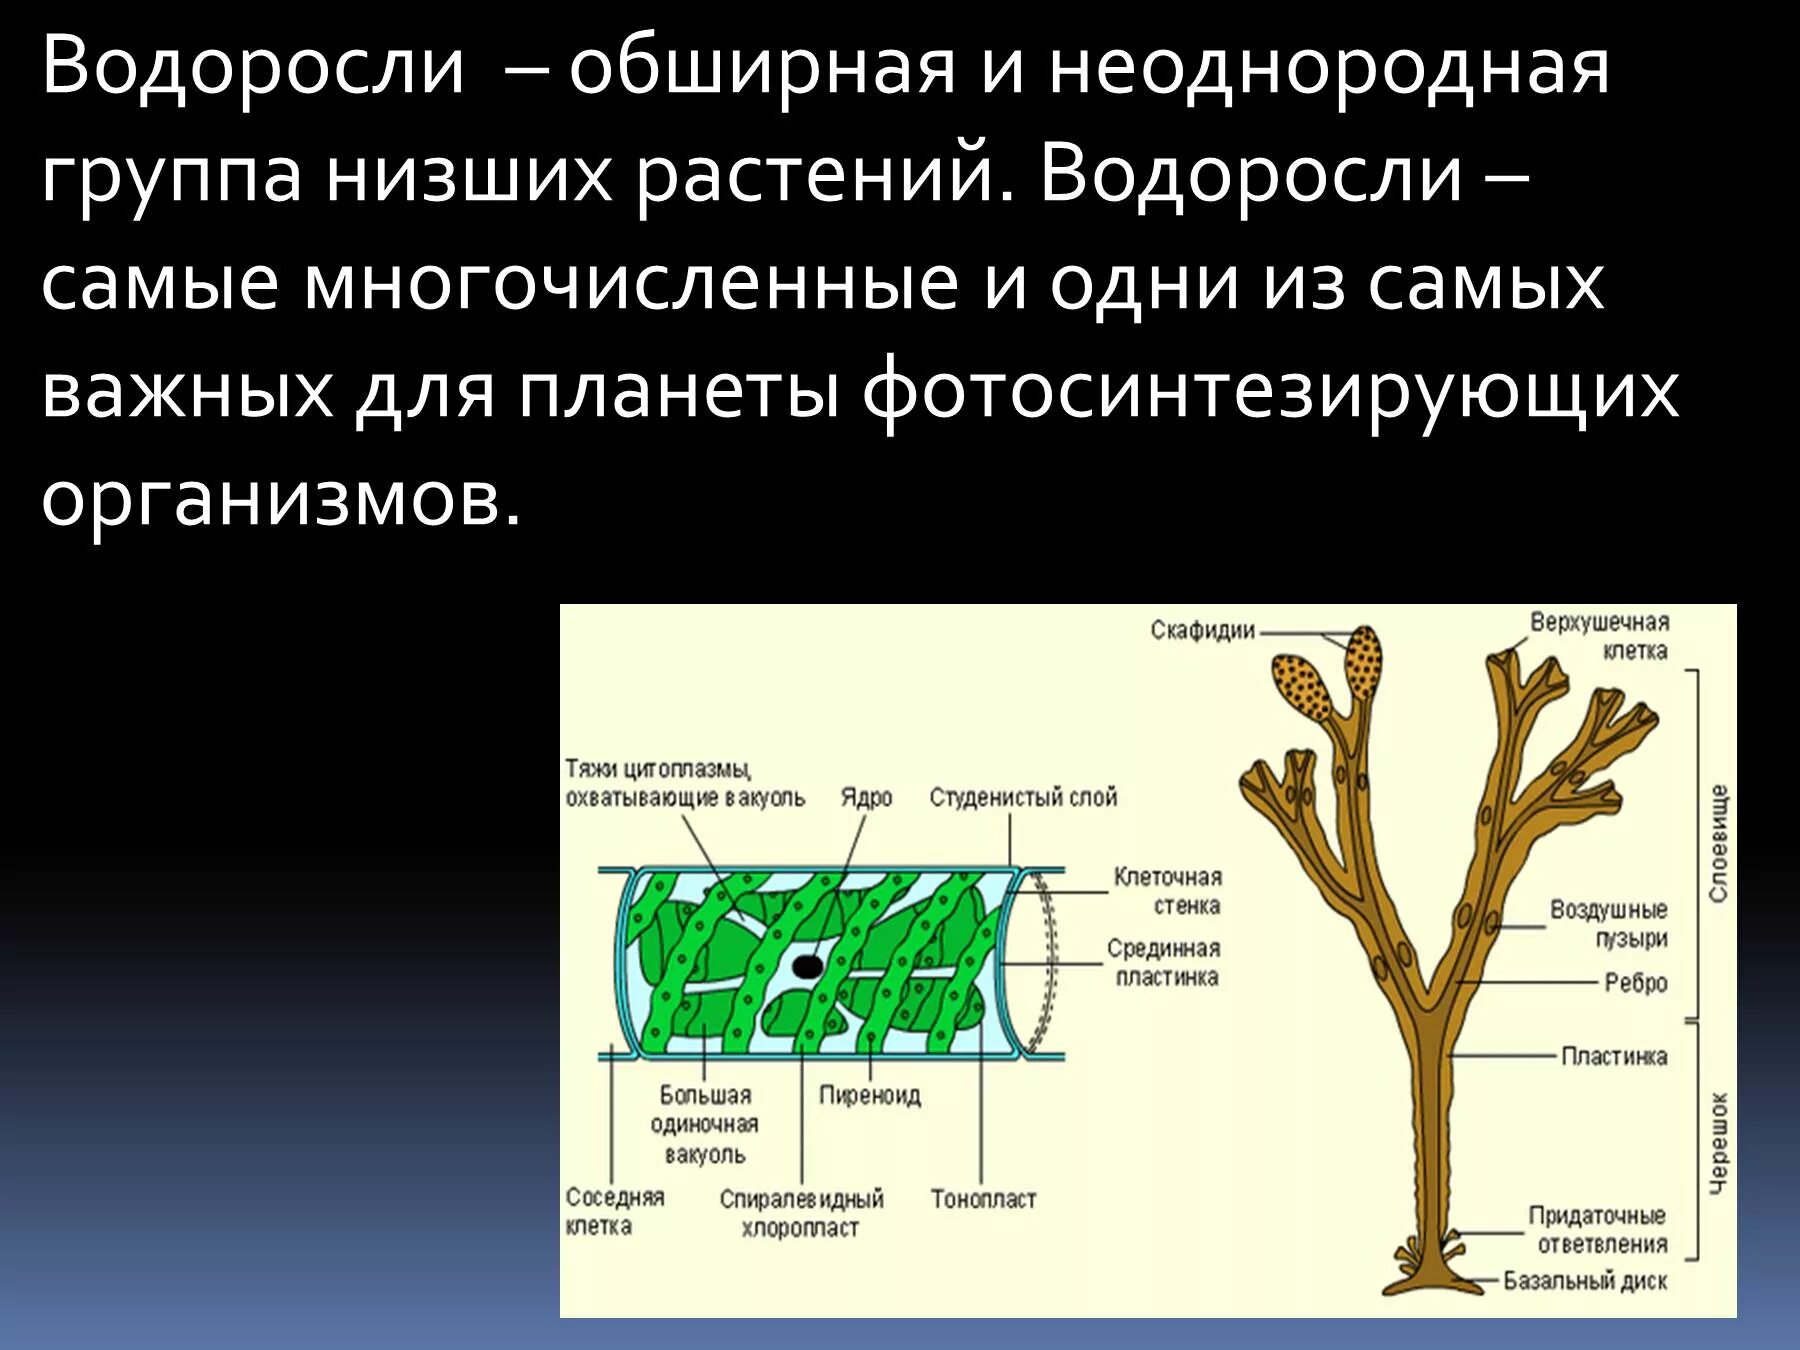 4 класса водорослей. Строение водорослей. Биология доклад про водоросли. Водоросли группа низших растений. Водоросли биология презентация.